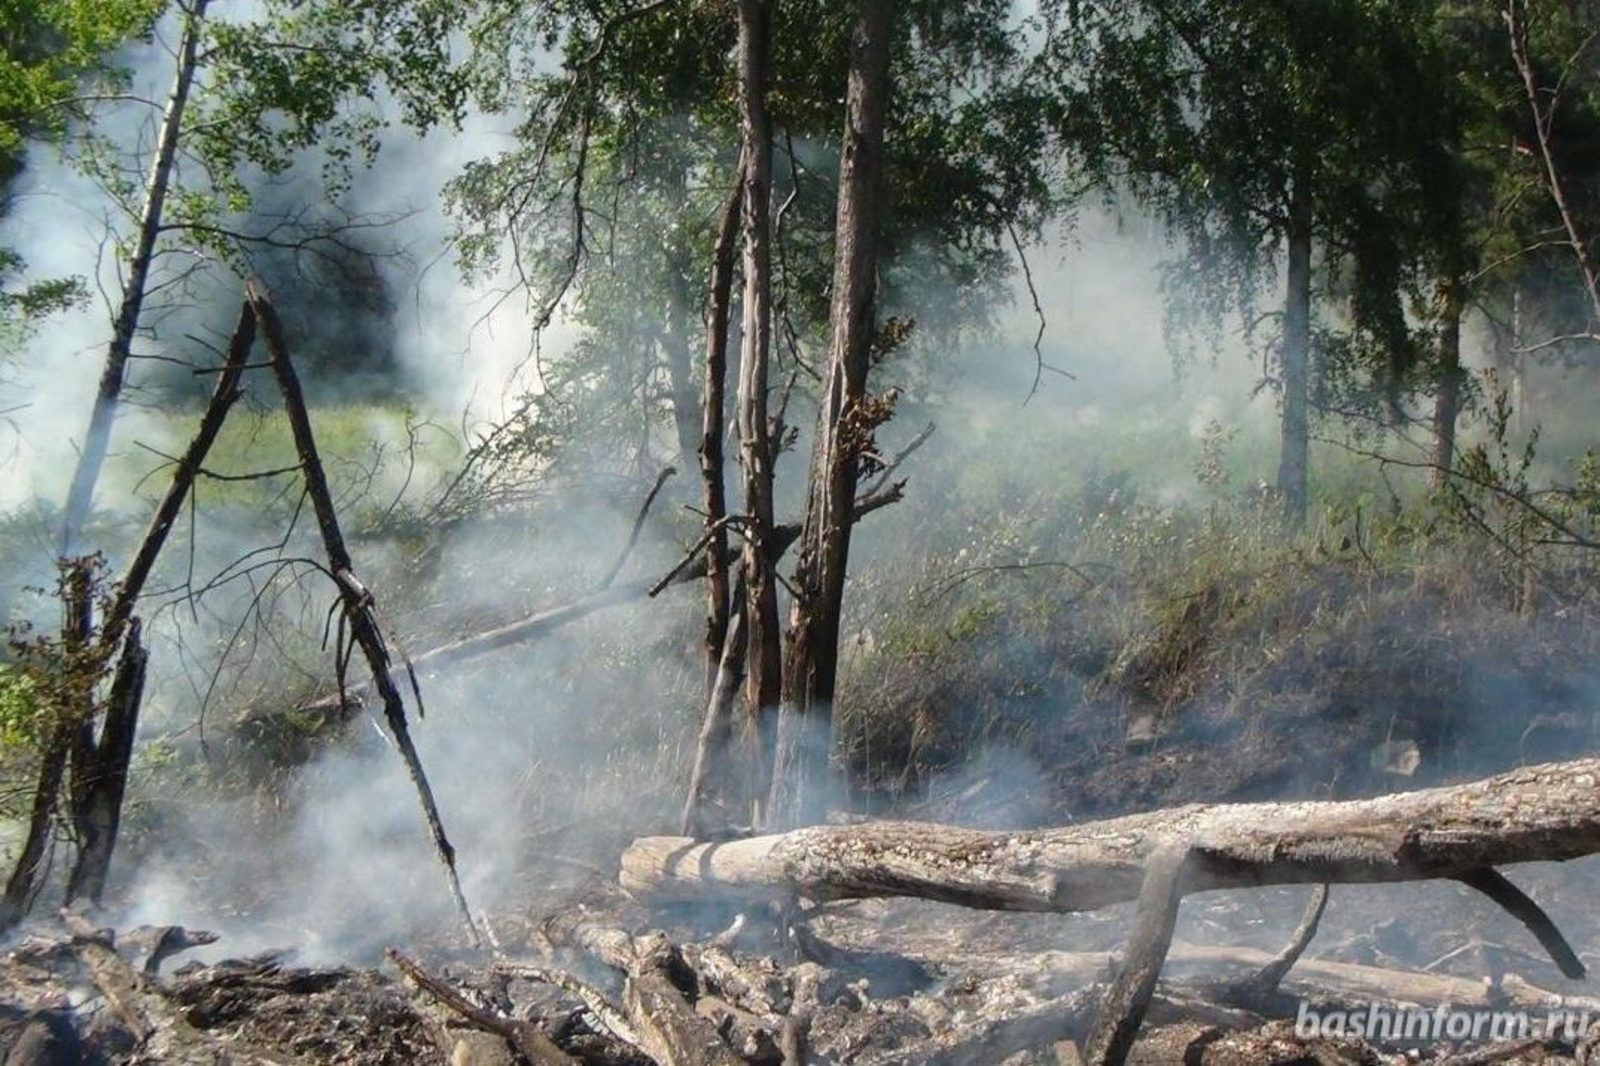 Сухая погода и беспечность отдыхающих способствуют лесным пожарам в Башкирии